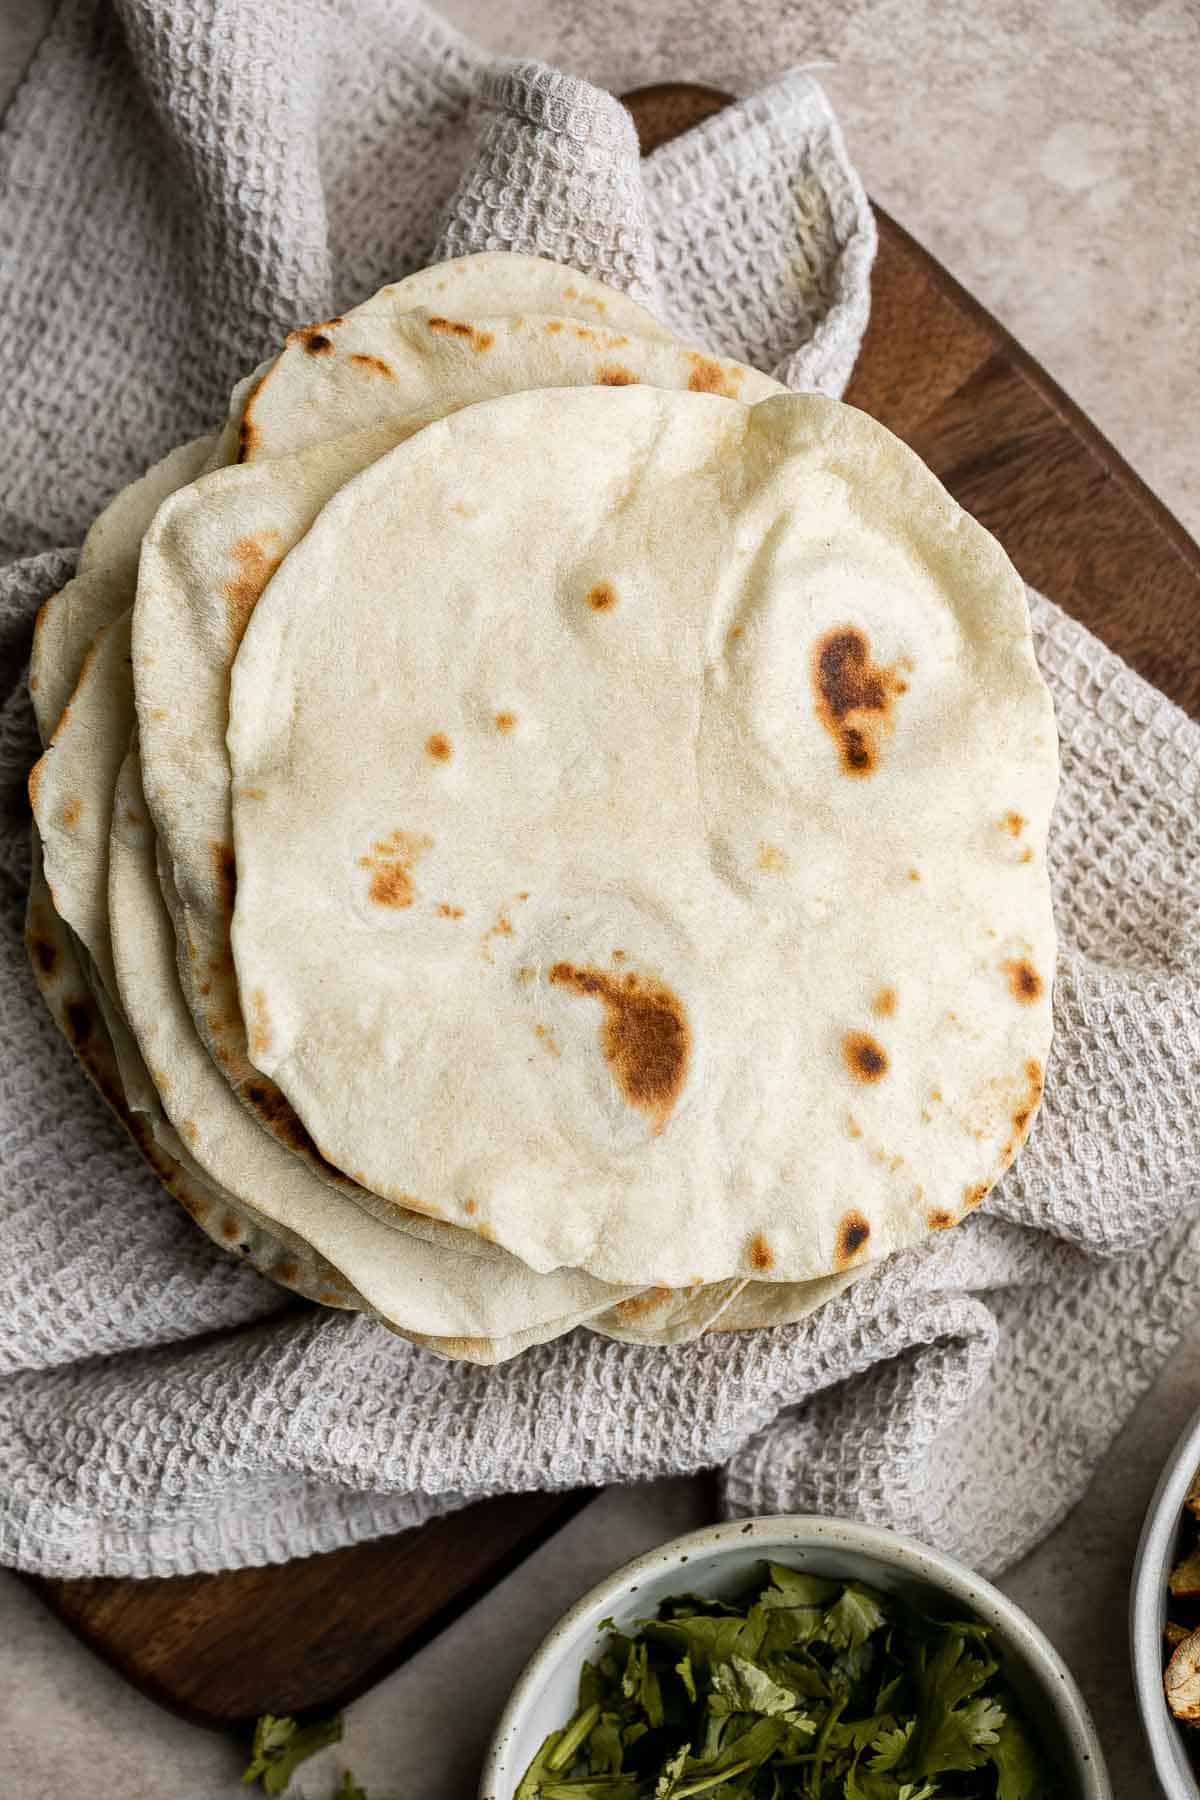 https://www.aheadofthyme.com/wp-content/uploads/2022/04/homemade-flour-tortillas-3.jpg